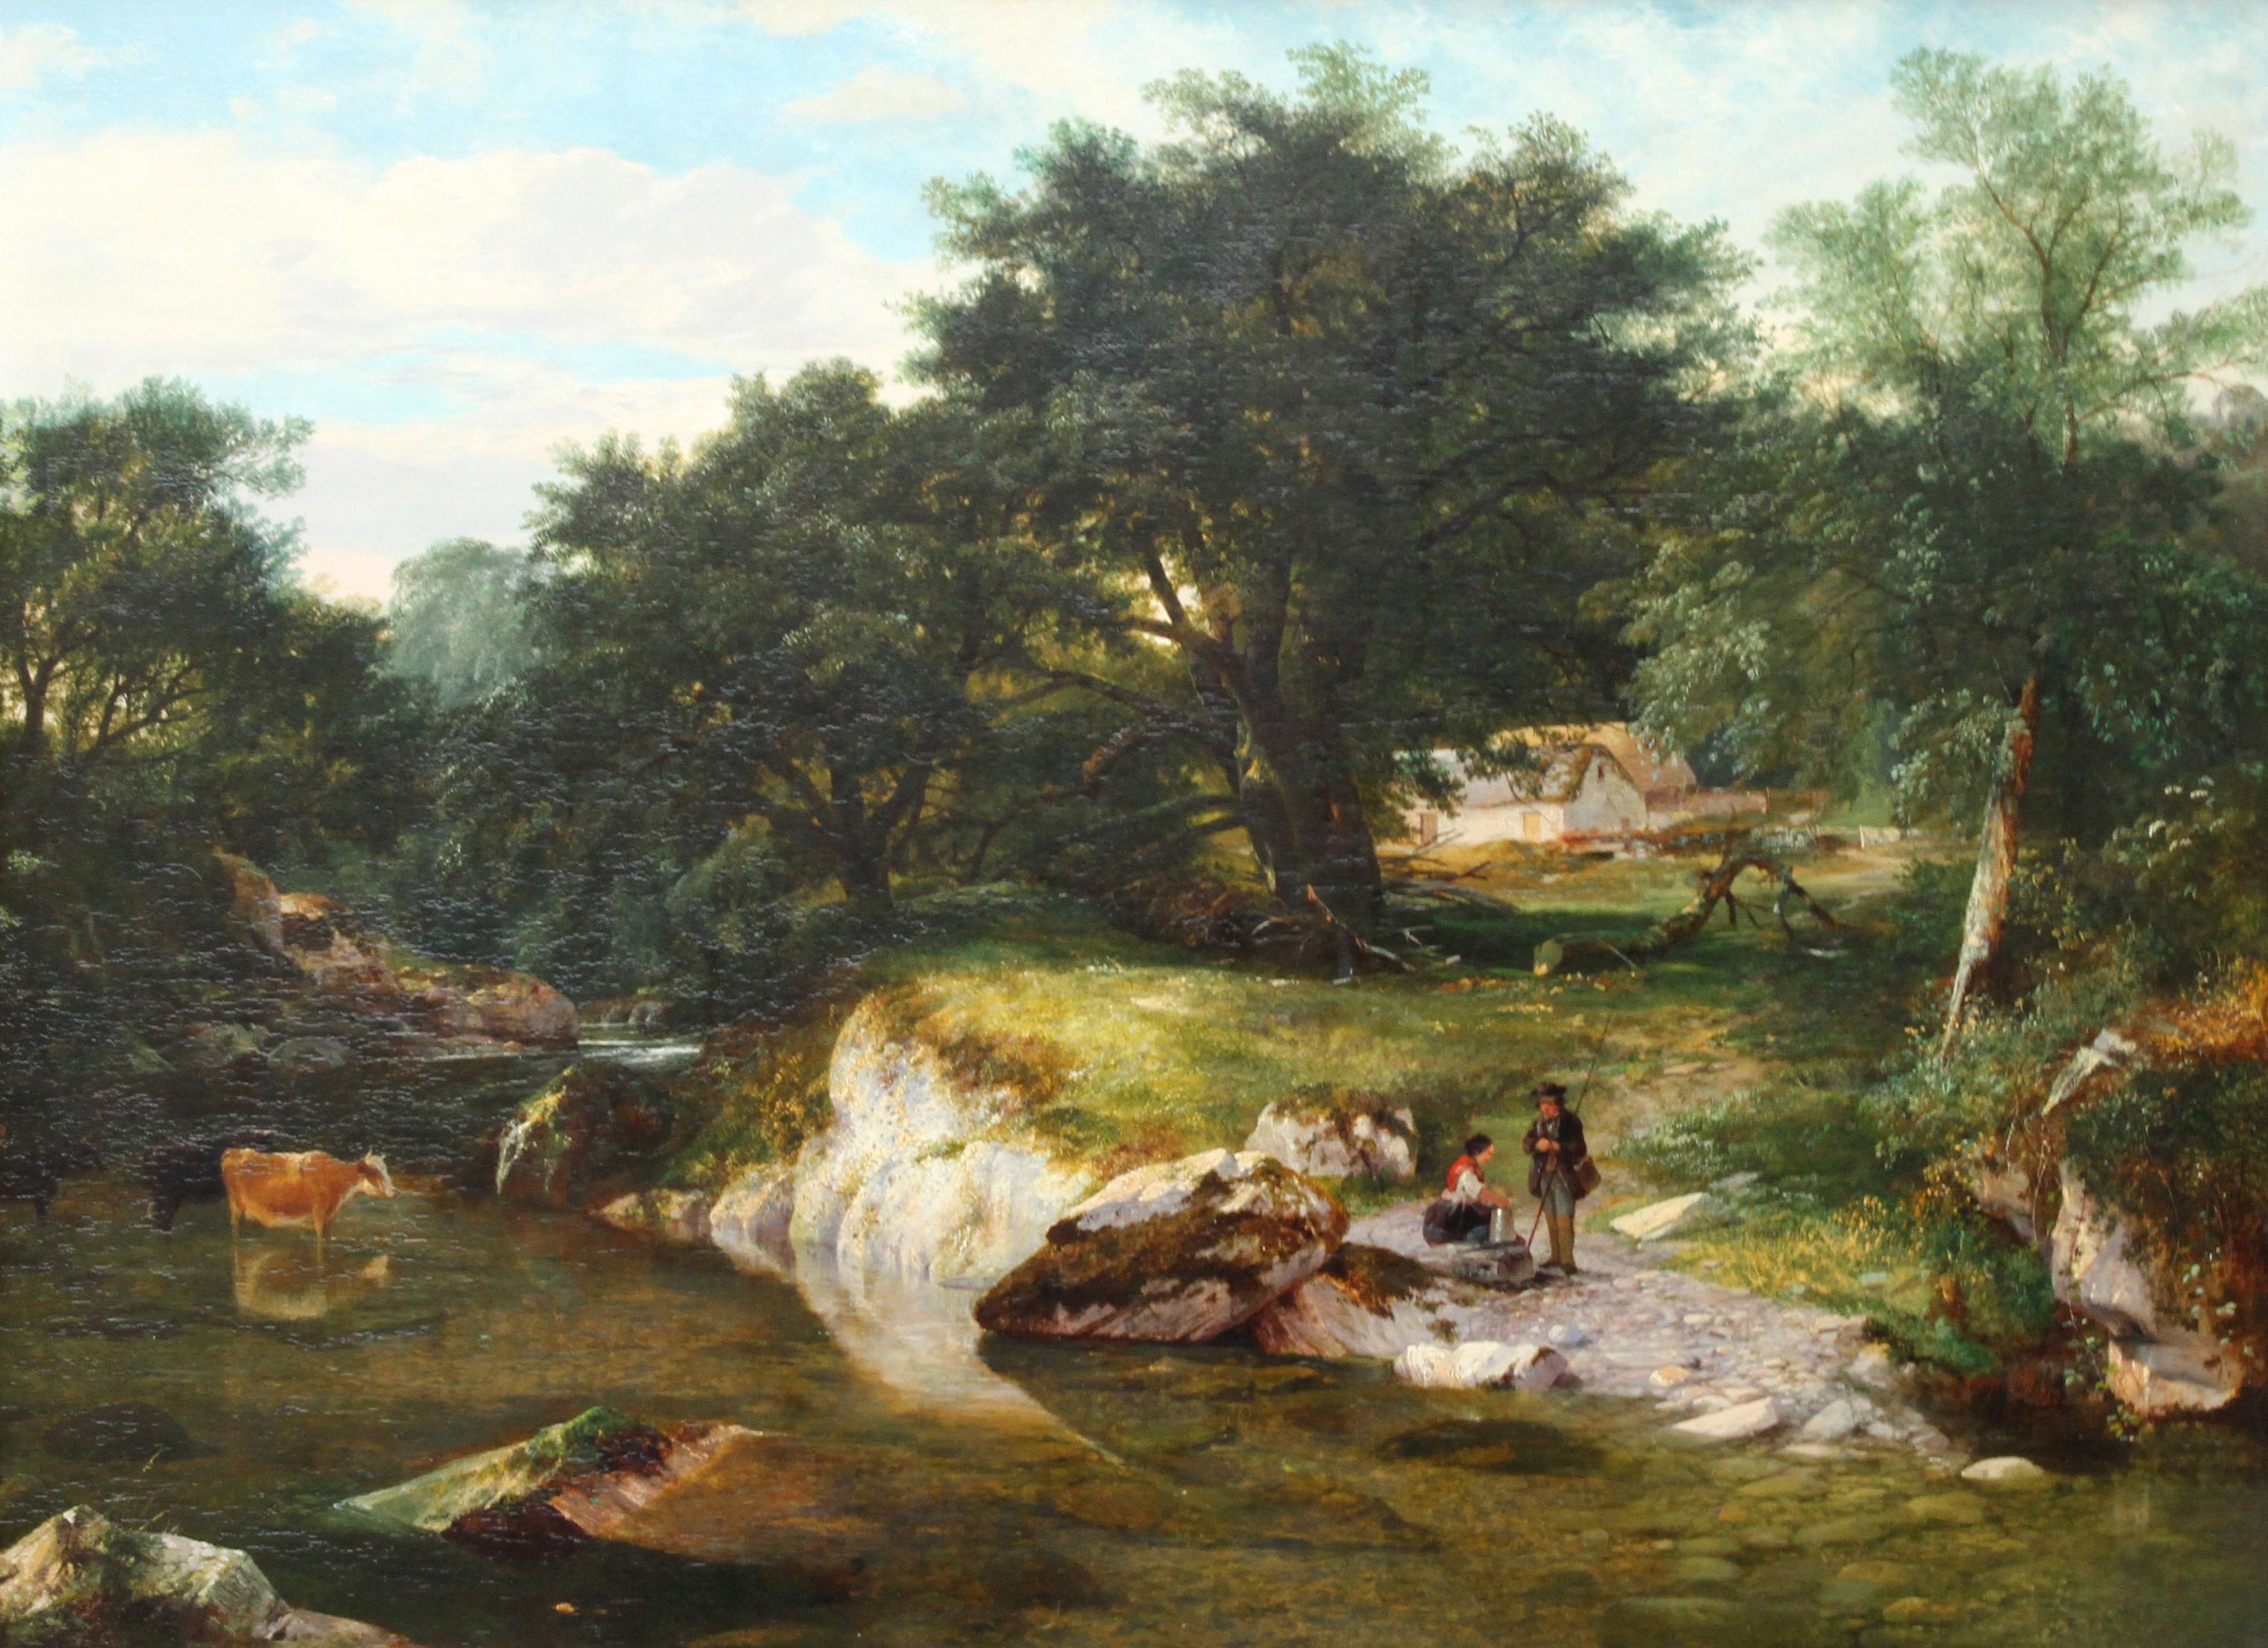 Ein Fluss im Wald – britisches viktorianisches Ölgemälde aus dem Jahr 1859 – Painting von George Cole